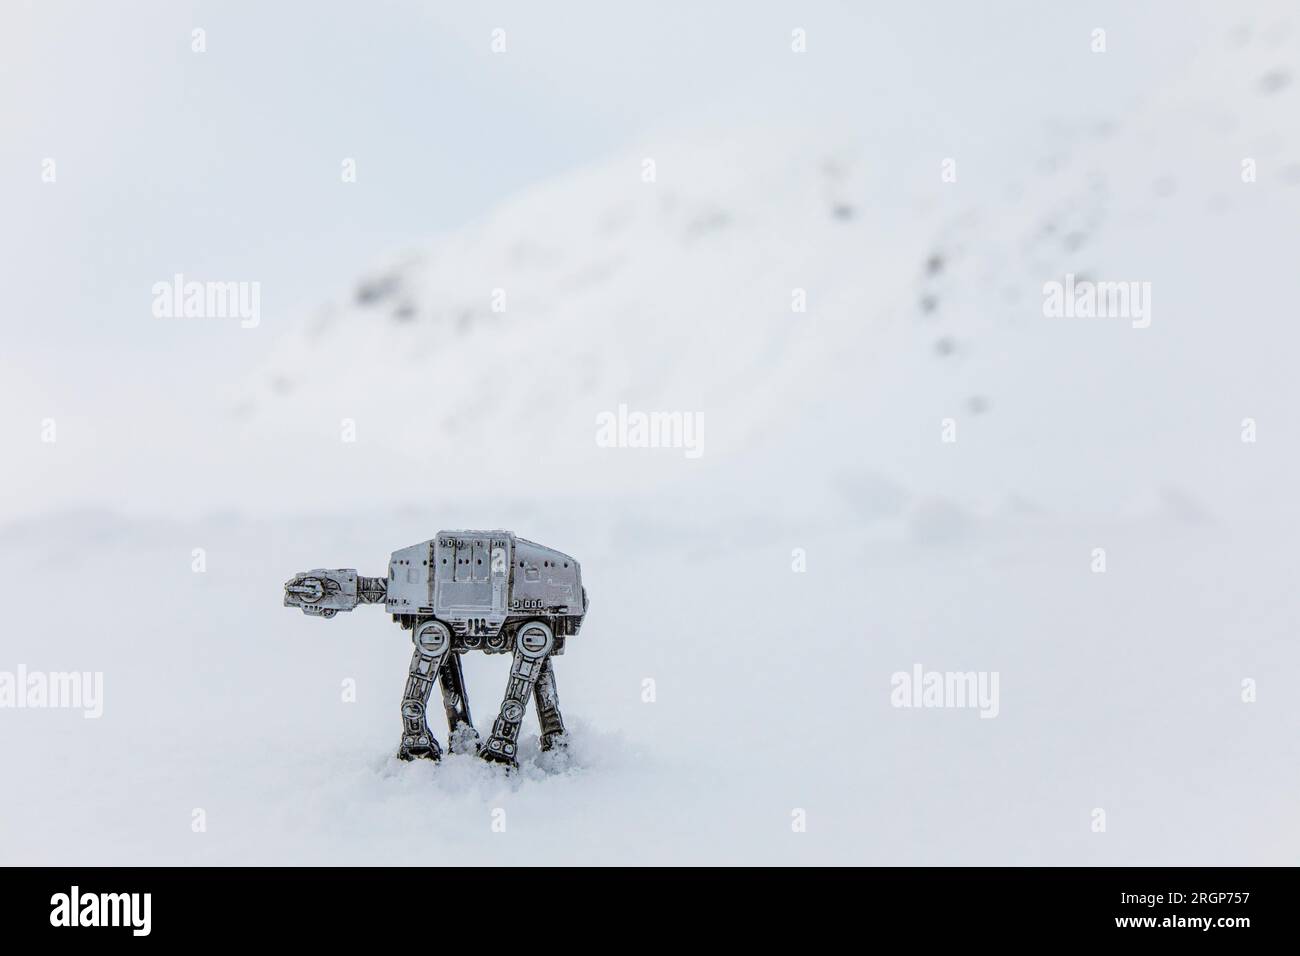 Miniatur-Spielzeugdroiden, die in der Winterberglandschaft spazieren gehen Stockfoto